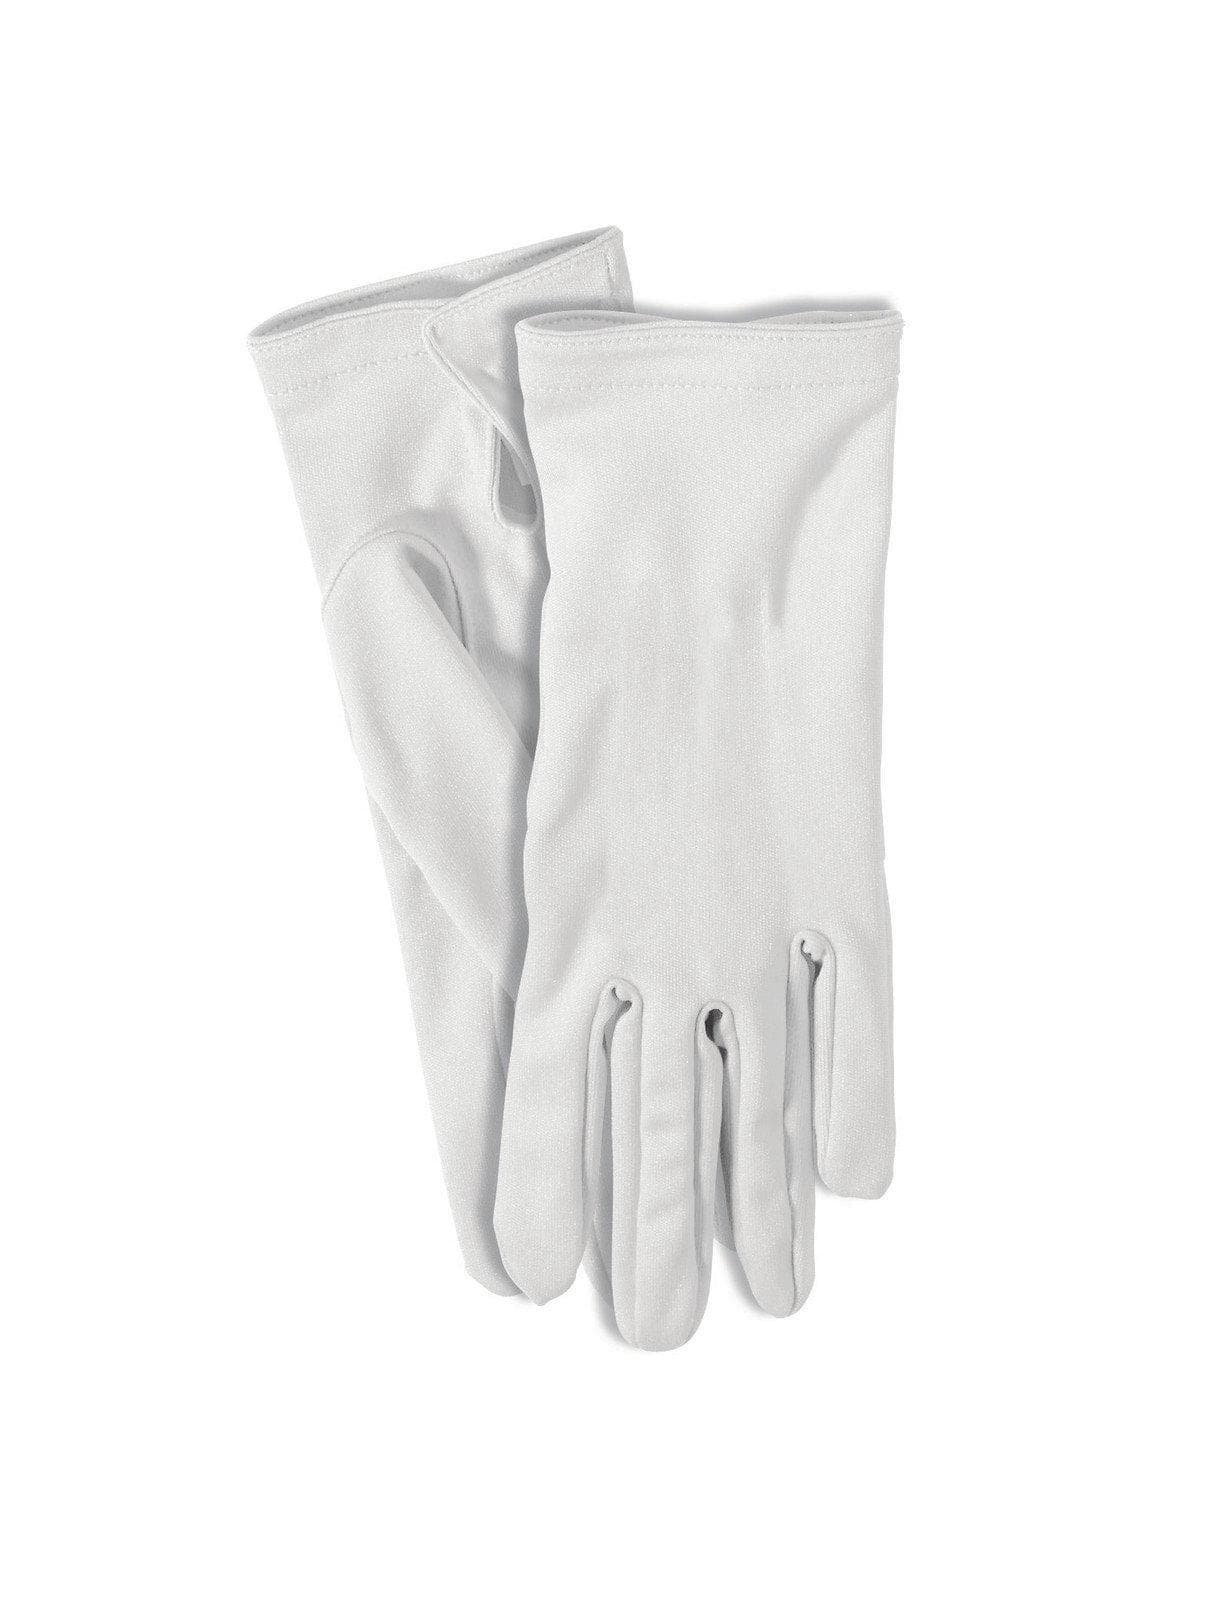 Short Gloves - White - costumes.com